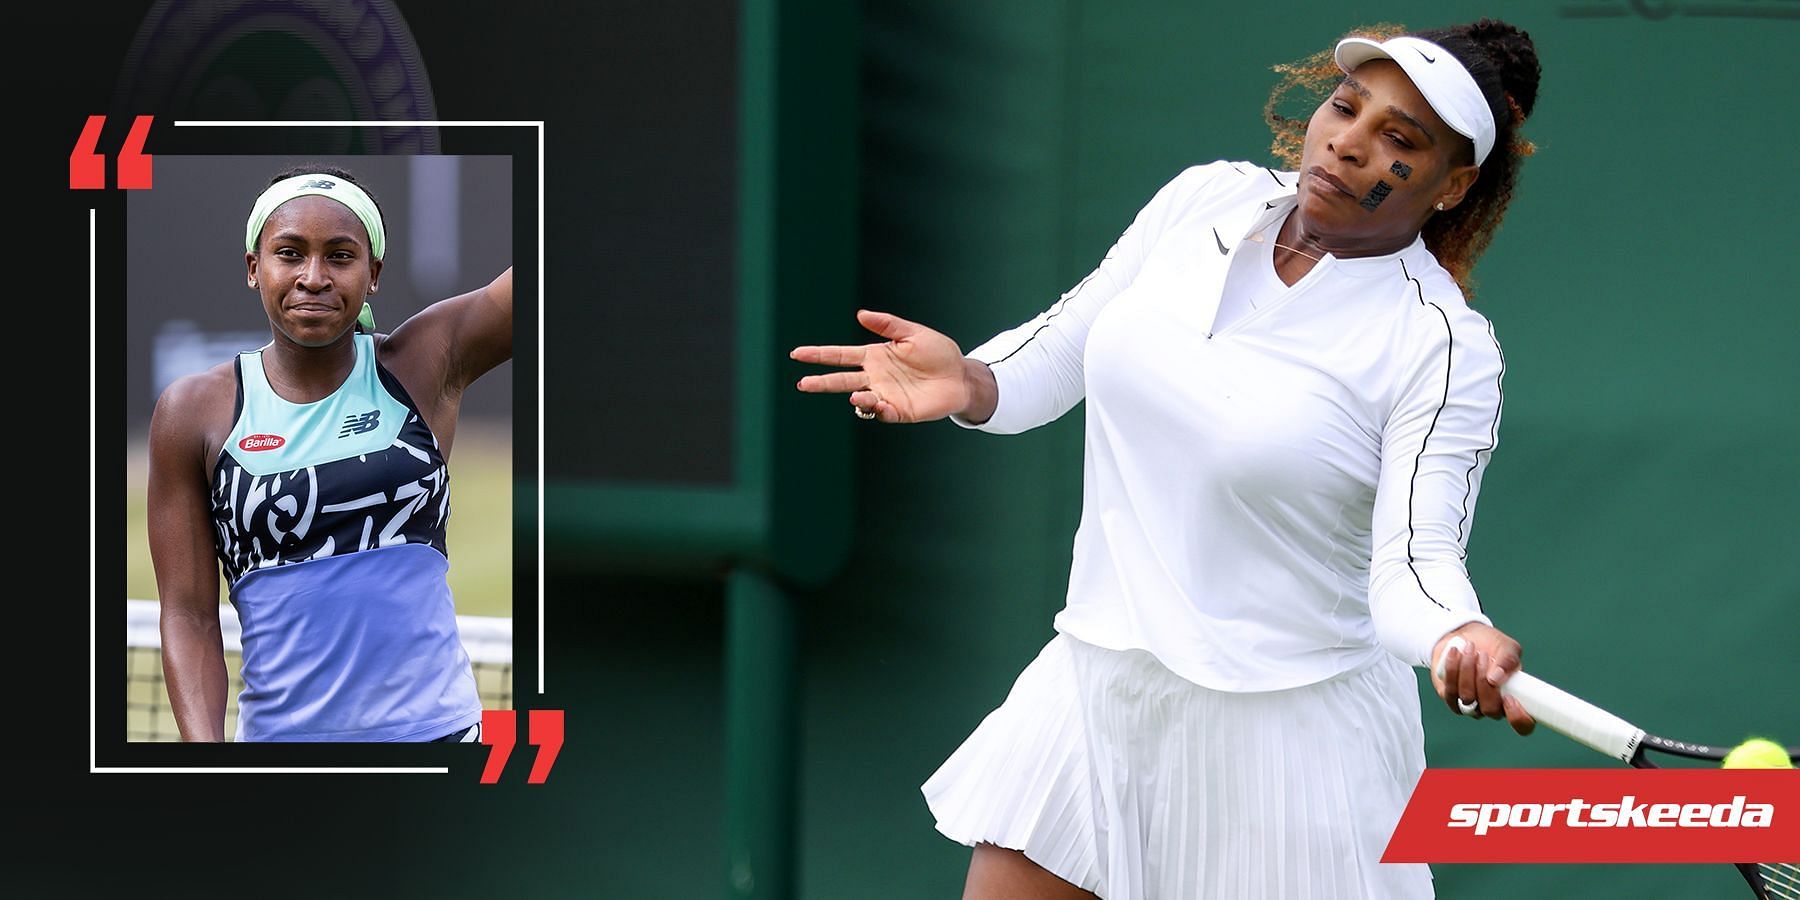 Coco Gauff (L) and Serena Williams (R)